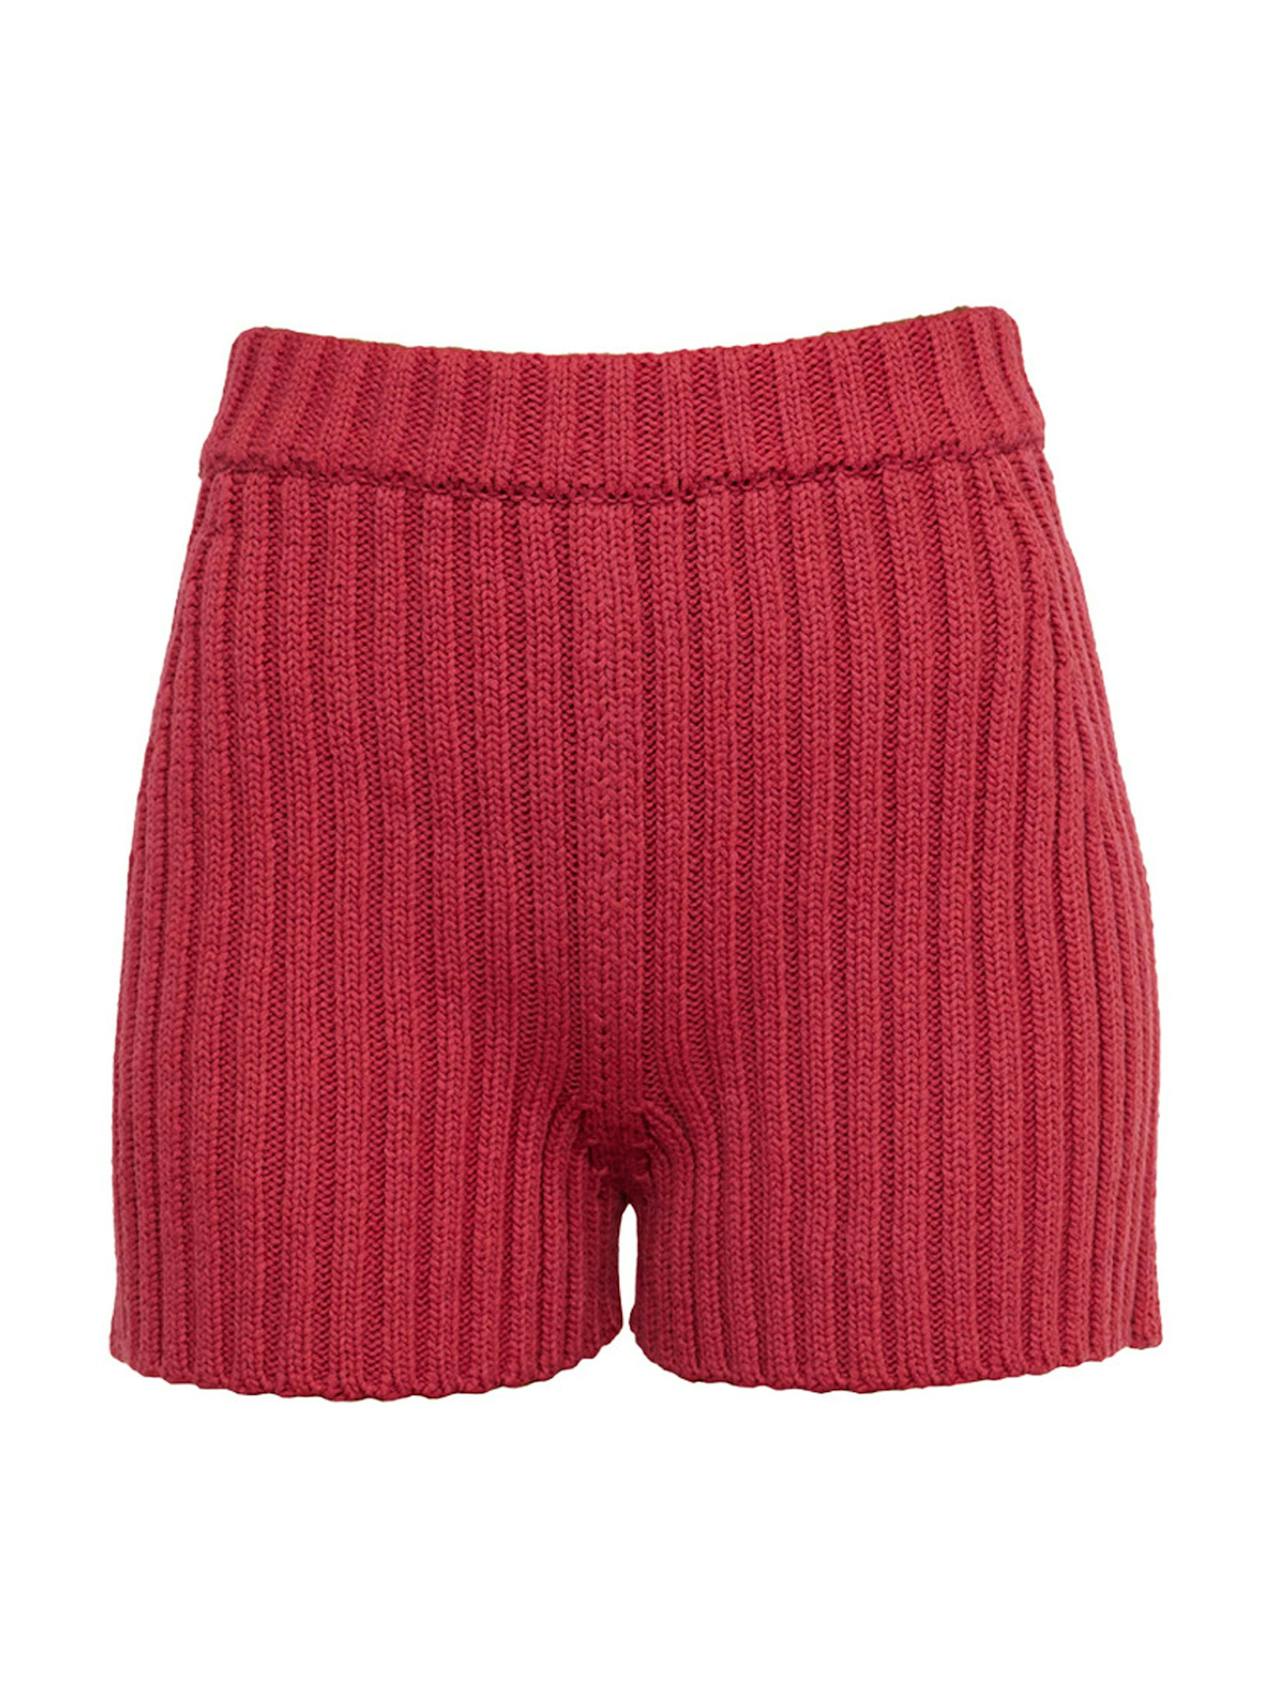 Pilnatis rhubarb cotton shorts